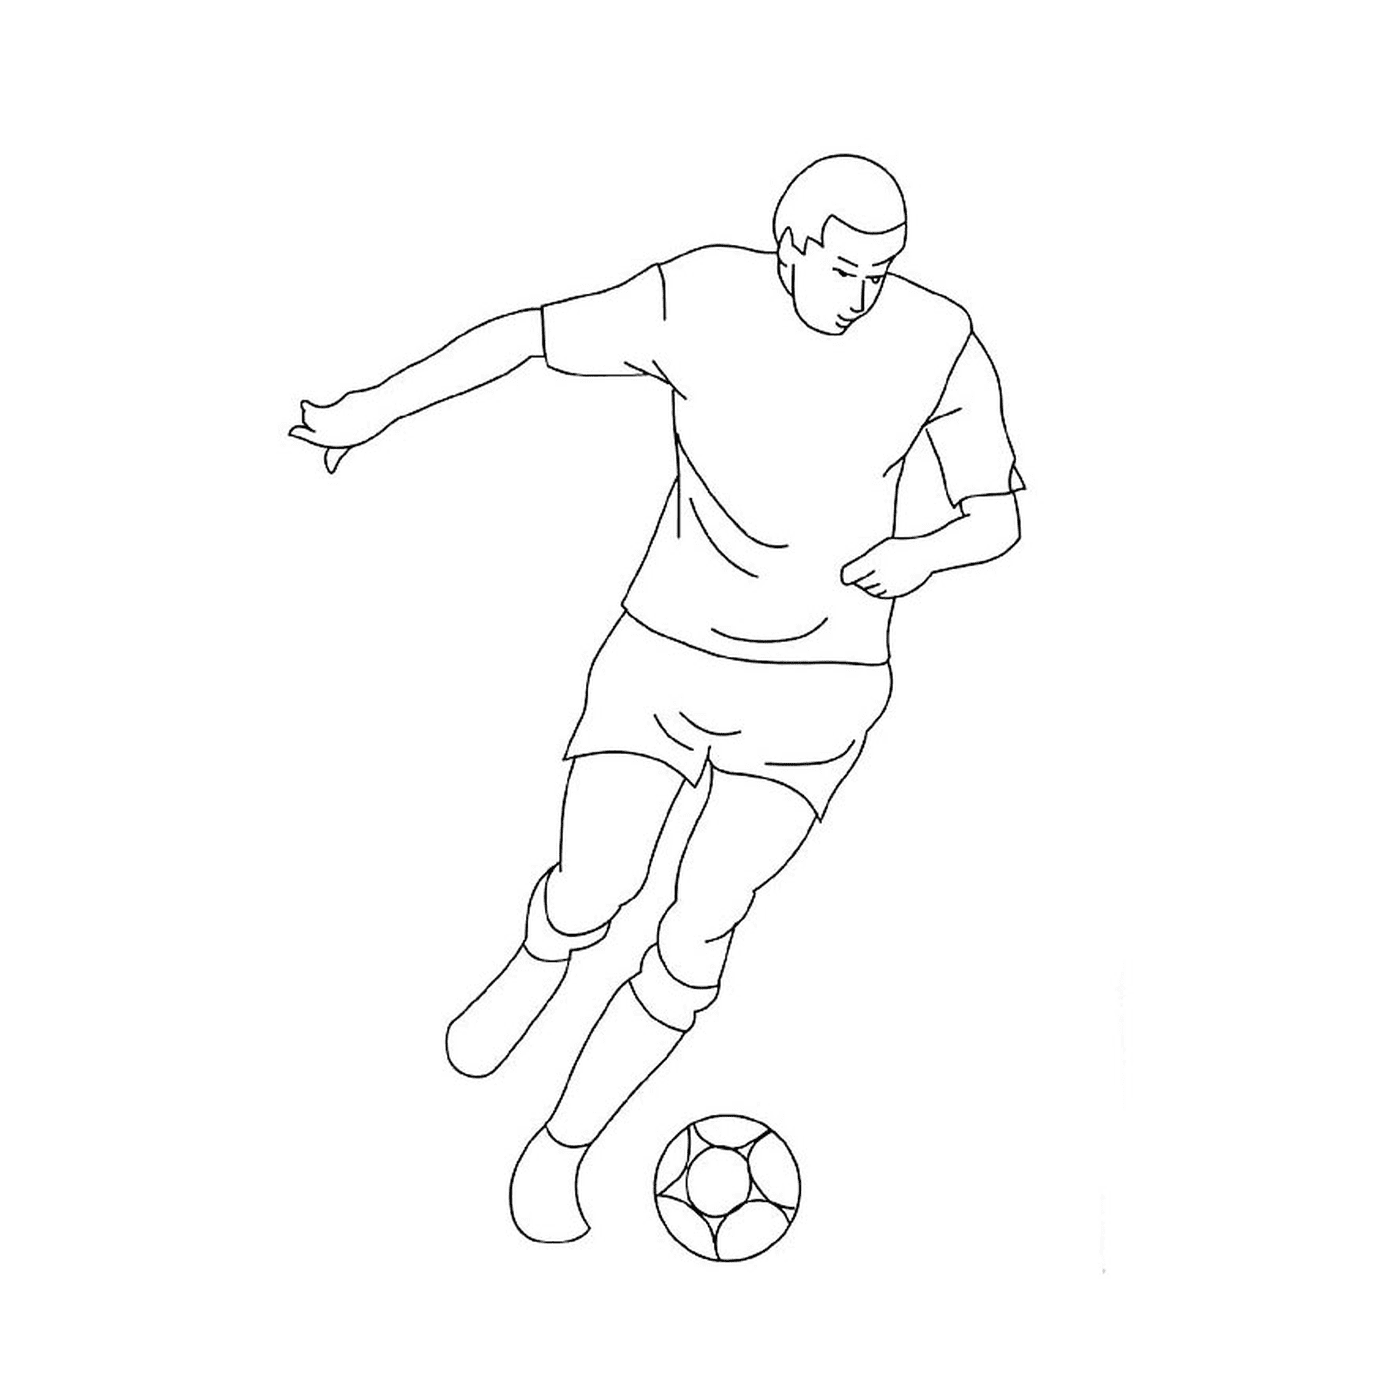  Мужчина играет в футбол 